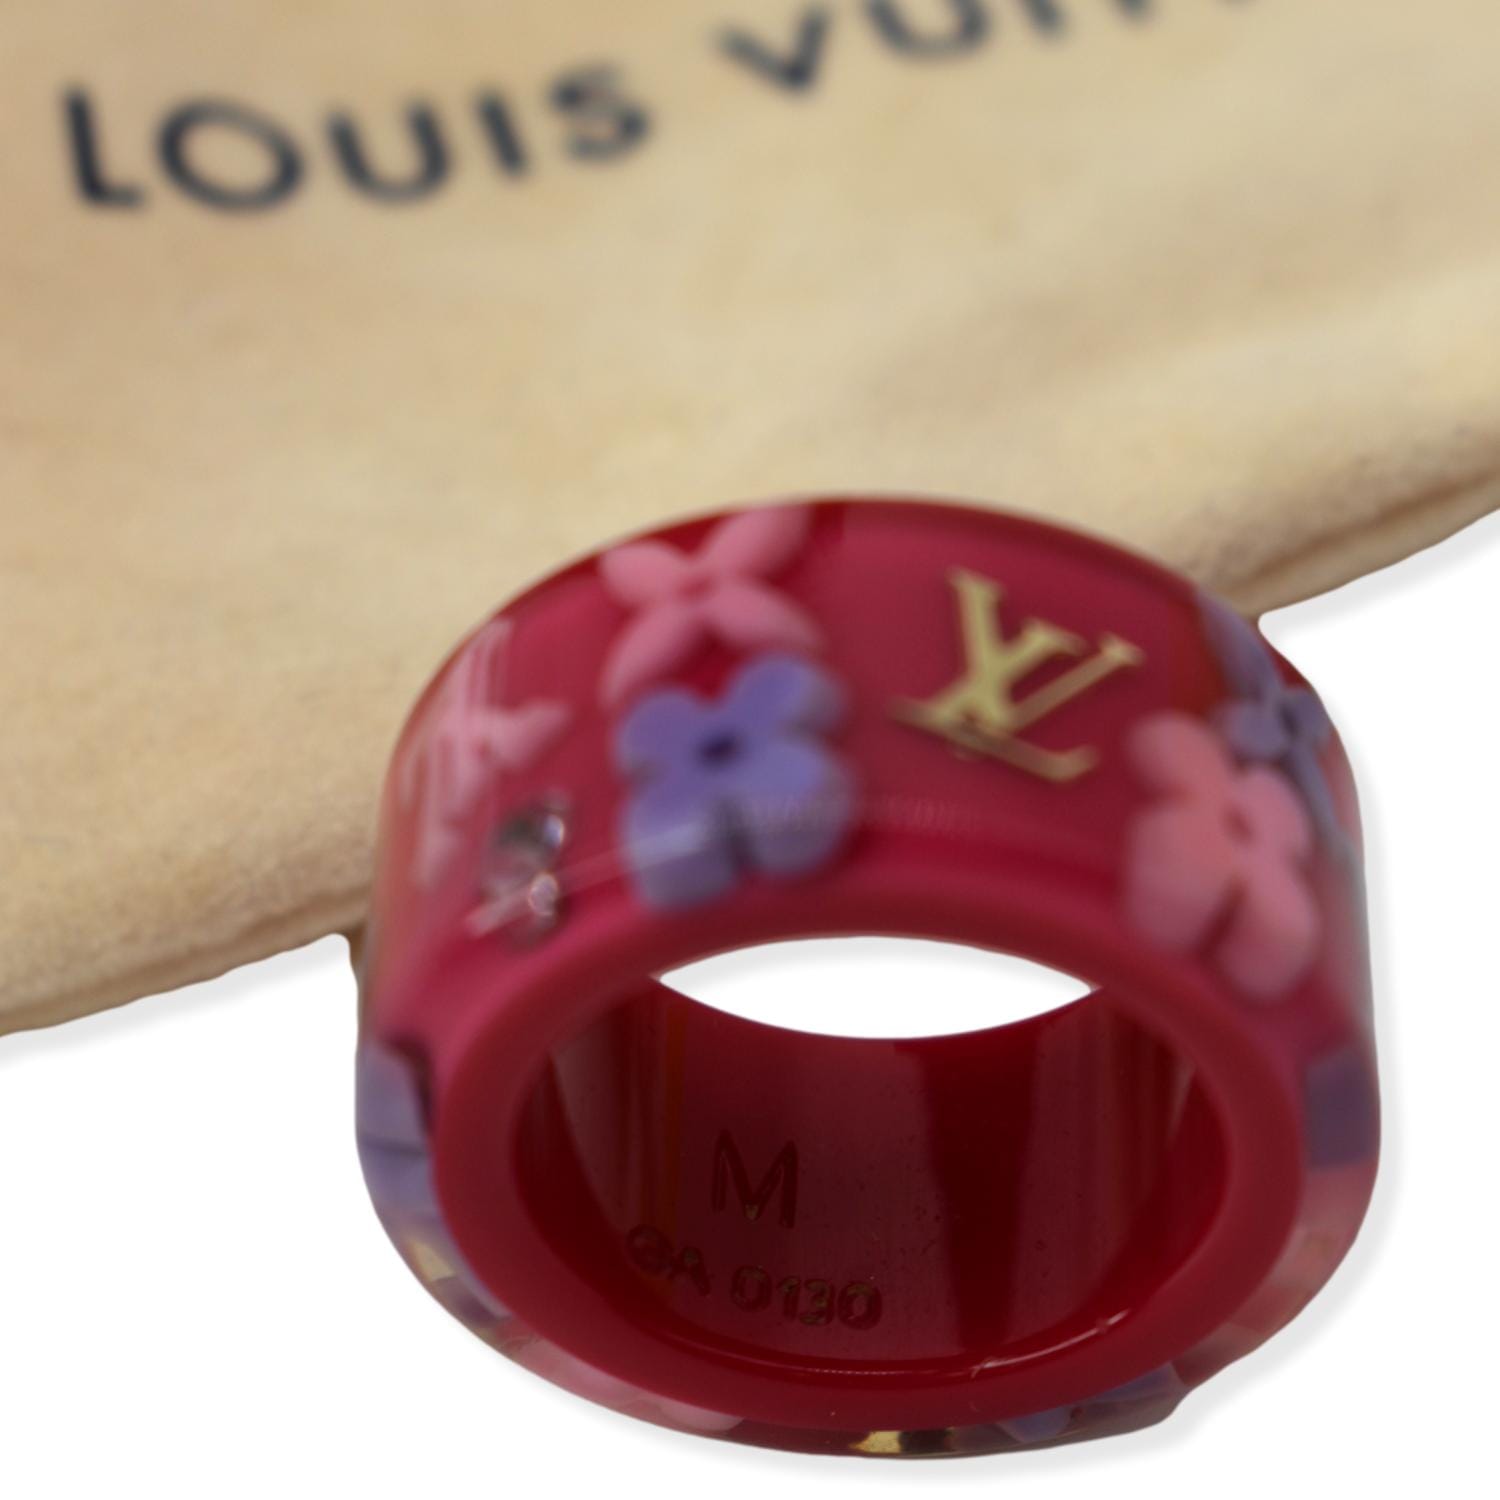 Louis Vuitton Louis Vuitton Purple Inclusion Bracelet Bangle